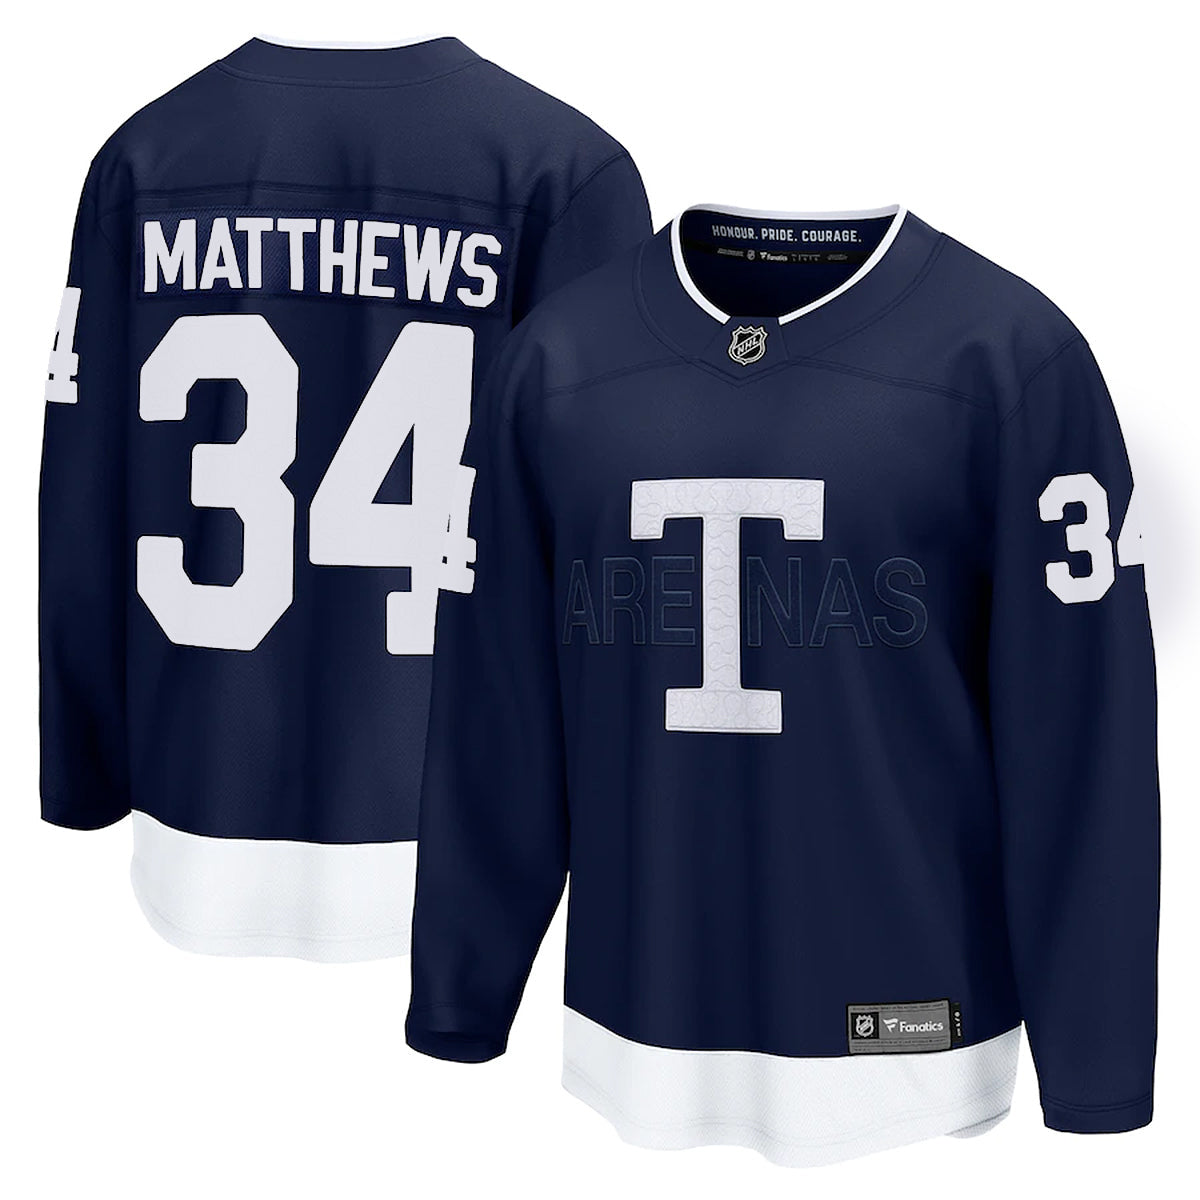 Fanatics Authentic Auston Matthews Jerseys & Gear in NHL Fan Shop 